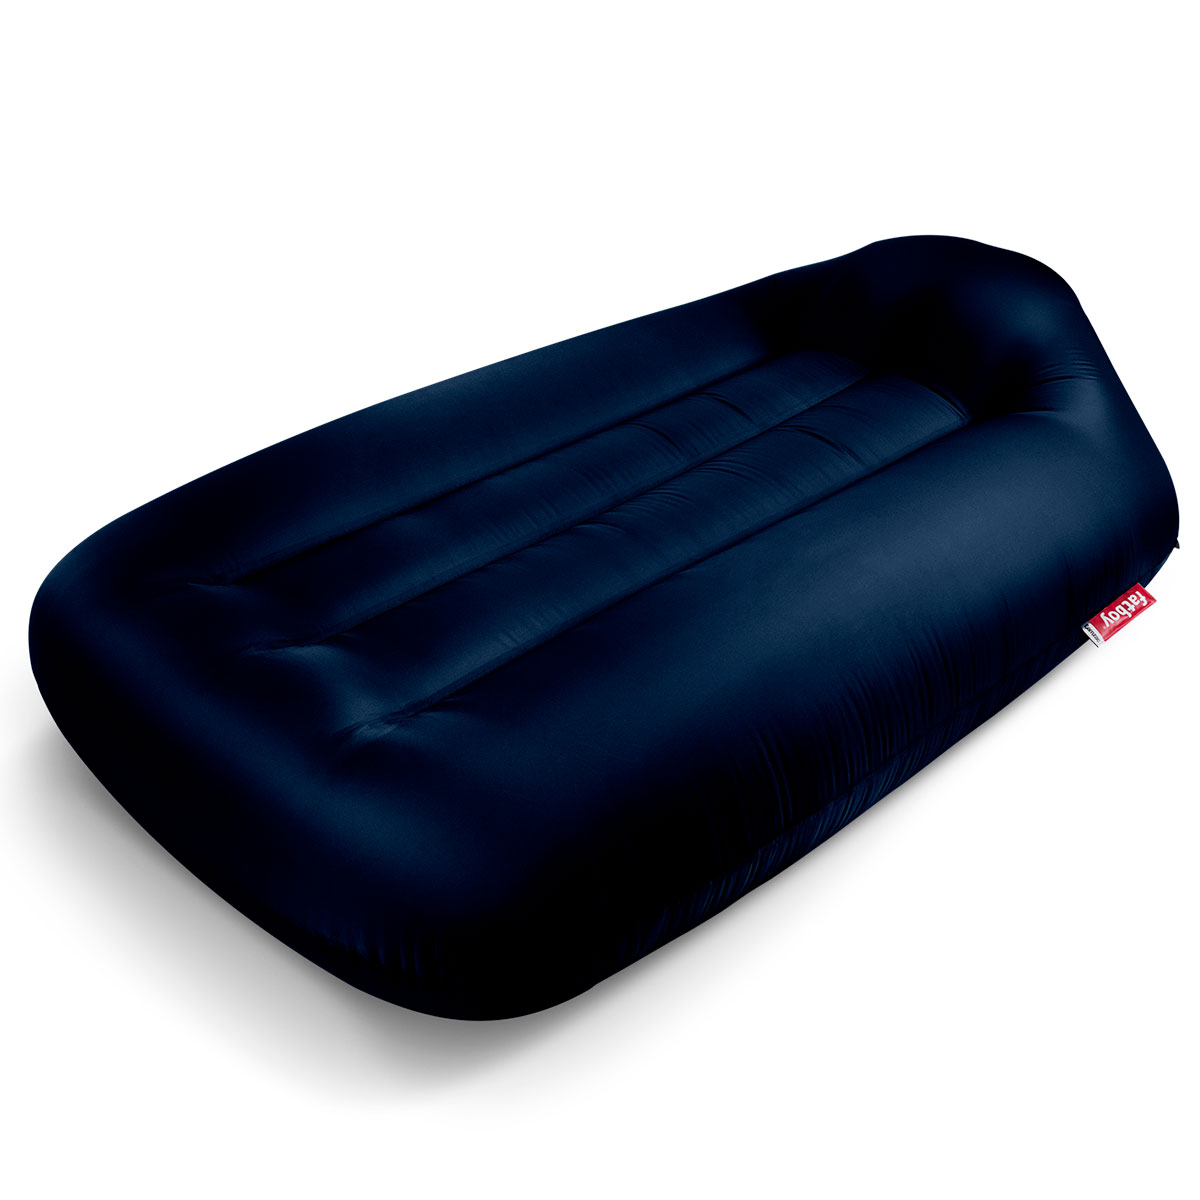 Sitzsack mit Luft gefüllt Fatboy® Lamzac L 3.0 Sky Blue Outdoor geeignet 190 x 105 x 45 cm Aufblasbares Sofa/Liege